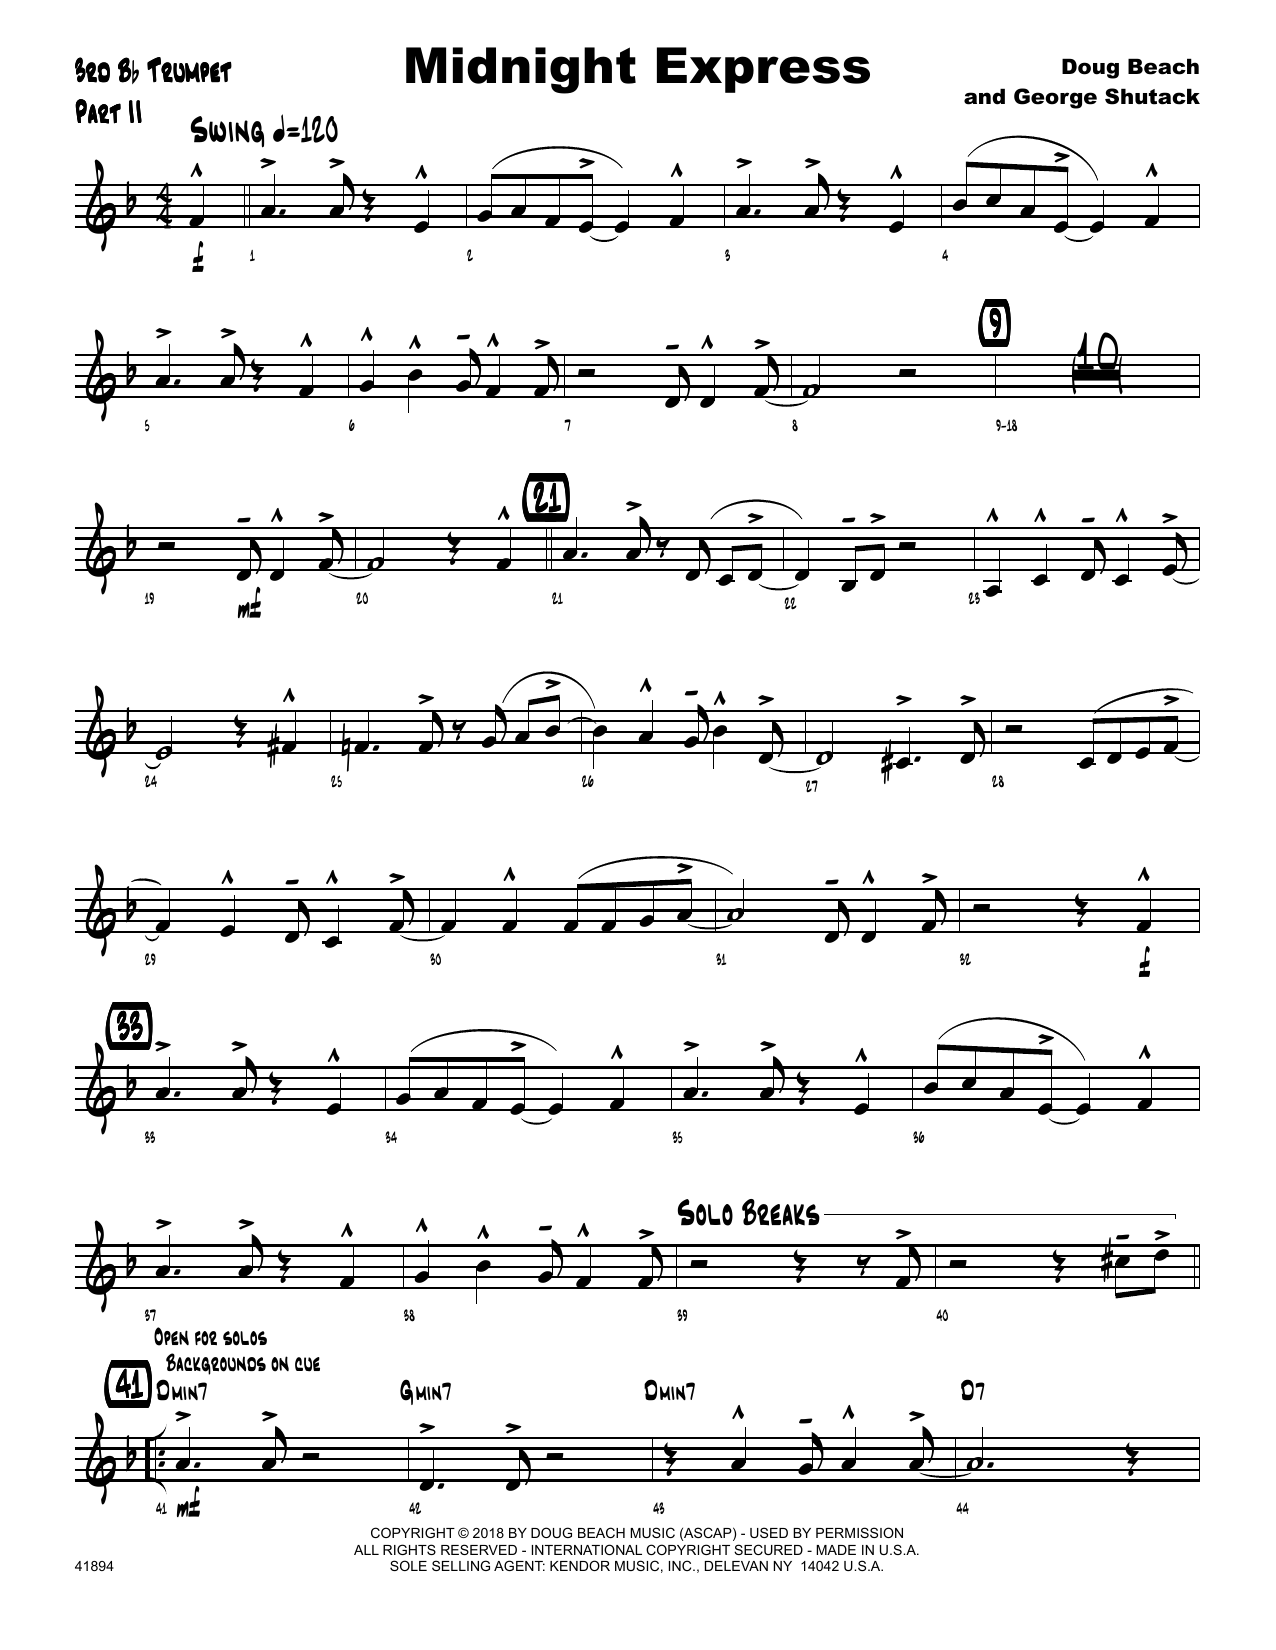 Download Doug Beach & George Shutack Midnight Express - 3rd Bb Trumpet Sheet Music